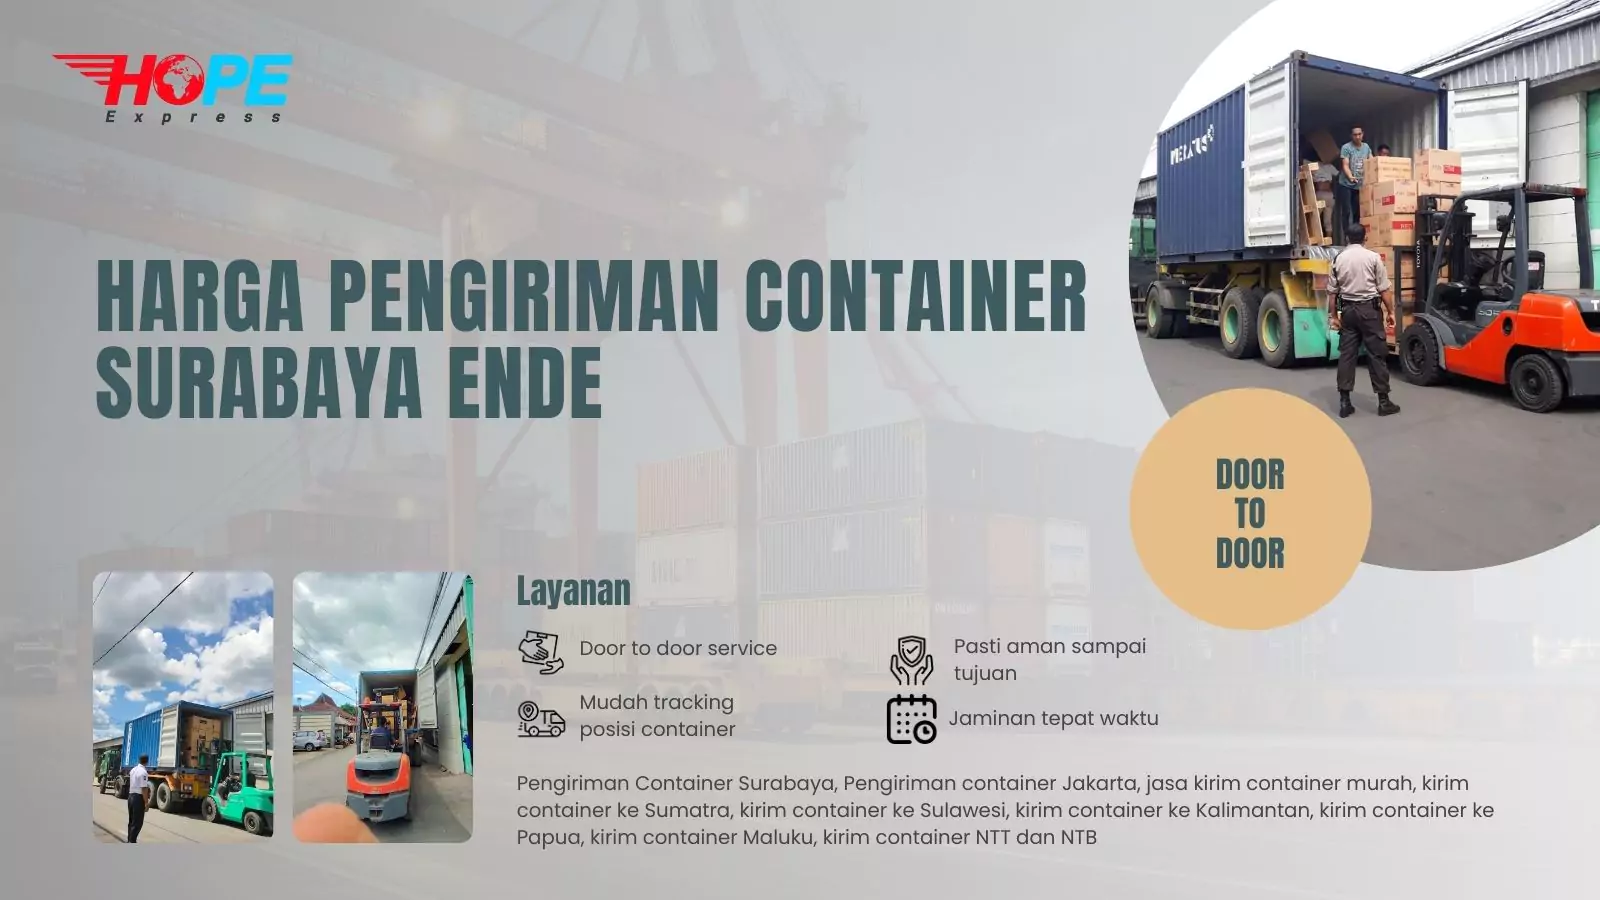 Harga Pengiriman Container Surabaya Ende